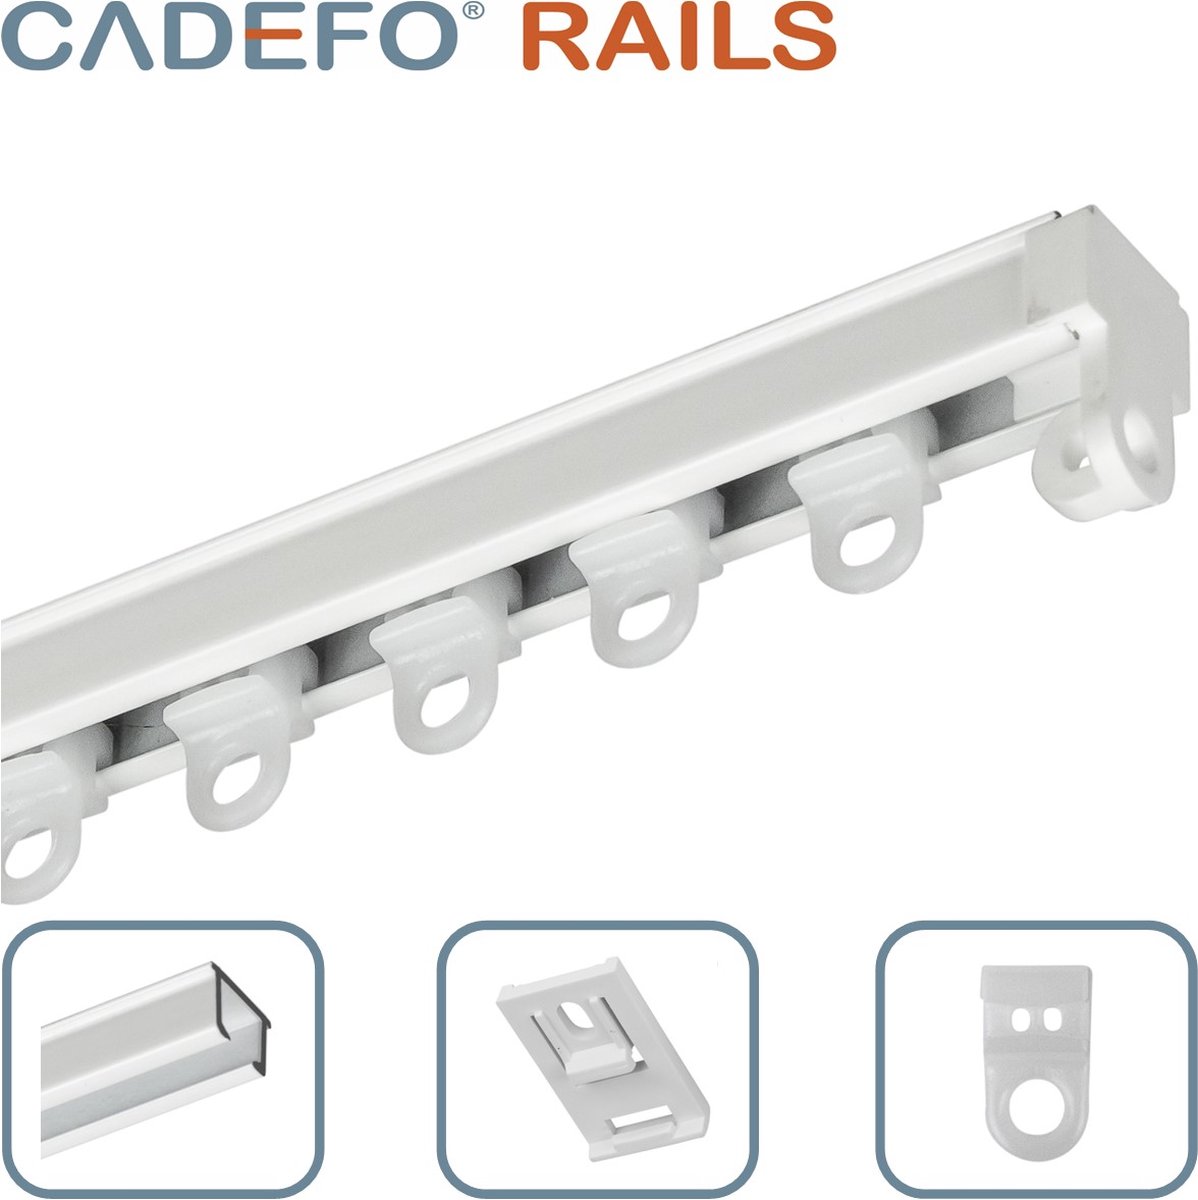 CADEFO RAILS (201 - 250 cm) Gordijnrails - Compleet op maat! - UIT 1 STUK - Leverbaar tot 6 meter - Plafondbevestiging - Lengte 242 cm